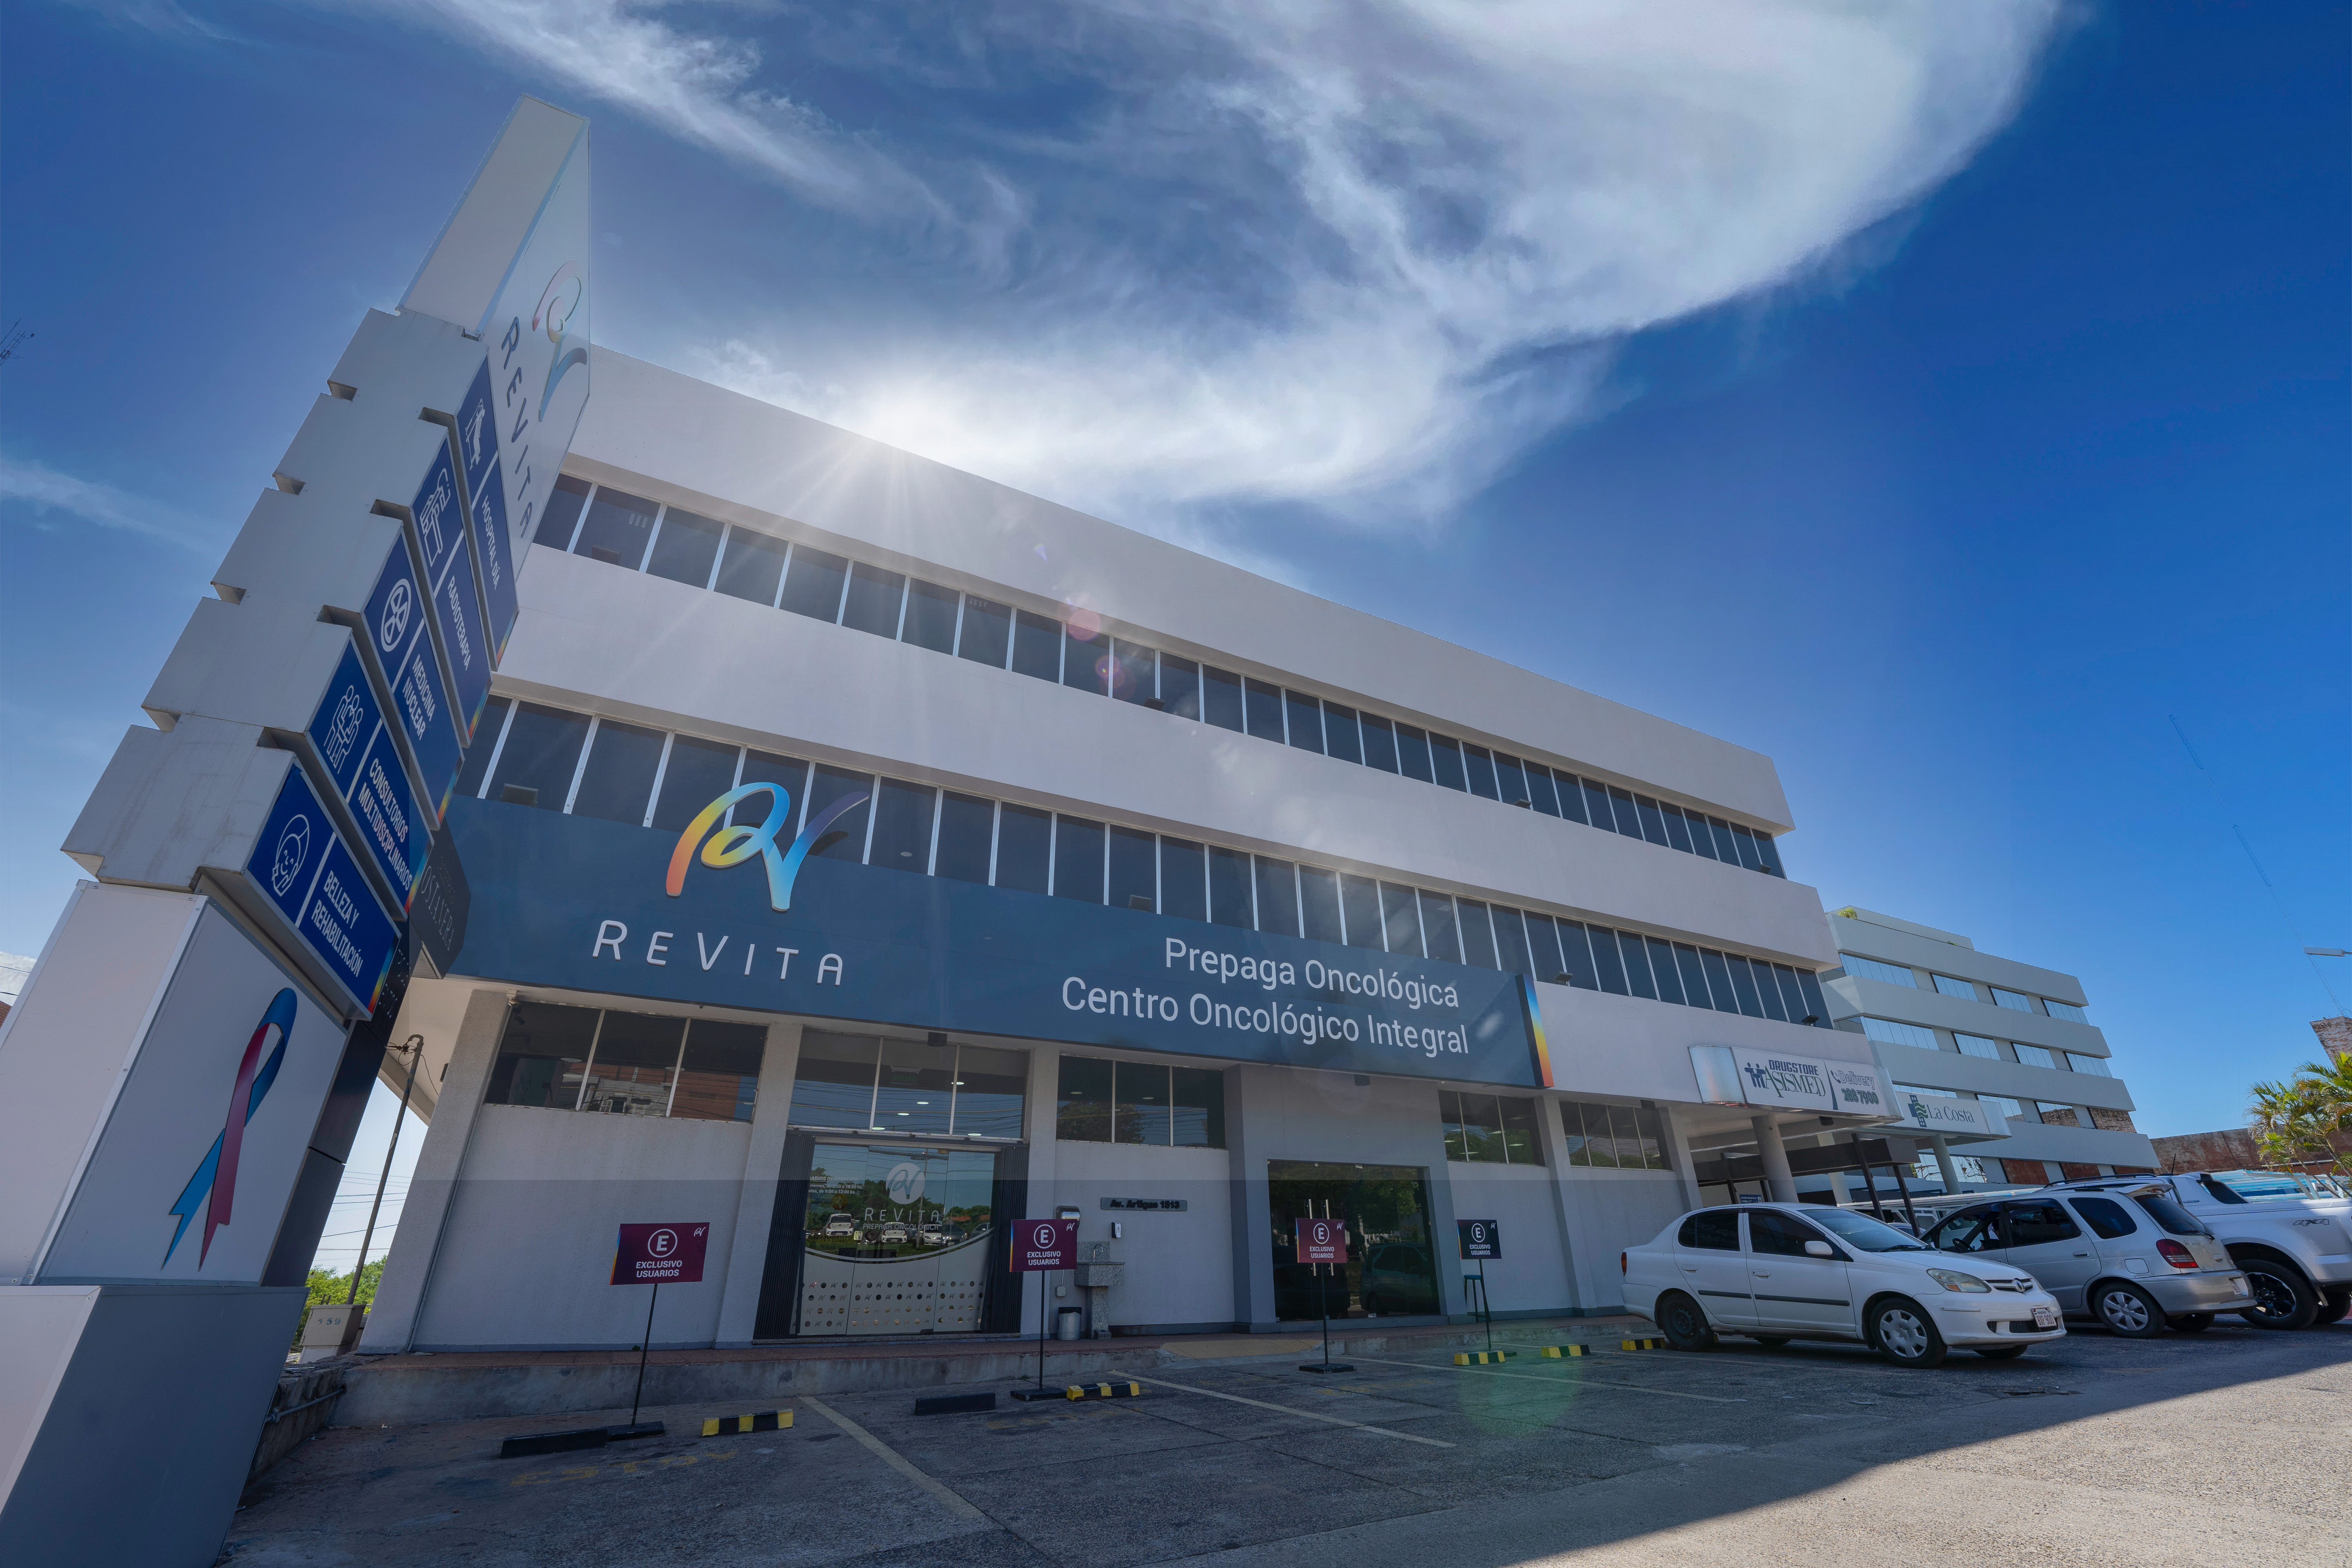 Revita es el Primer Centro Oncológico Integral del Paraguay. Foto: Revita.